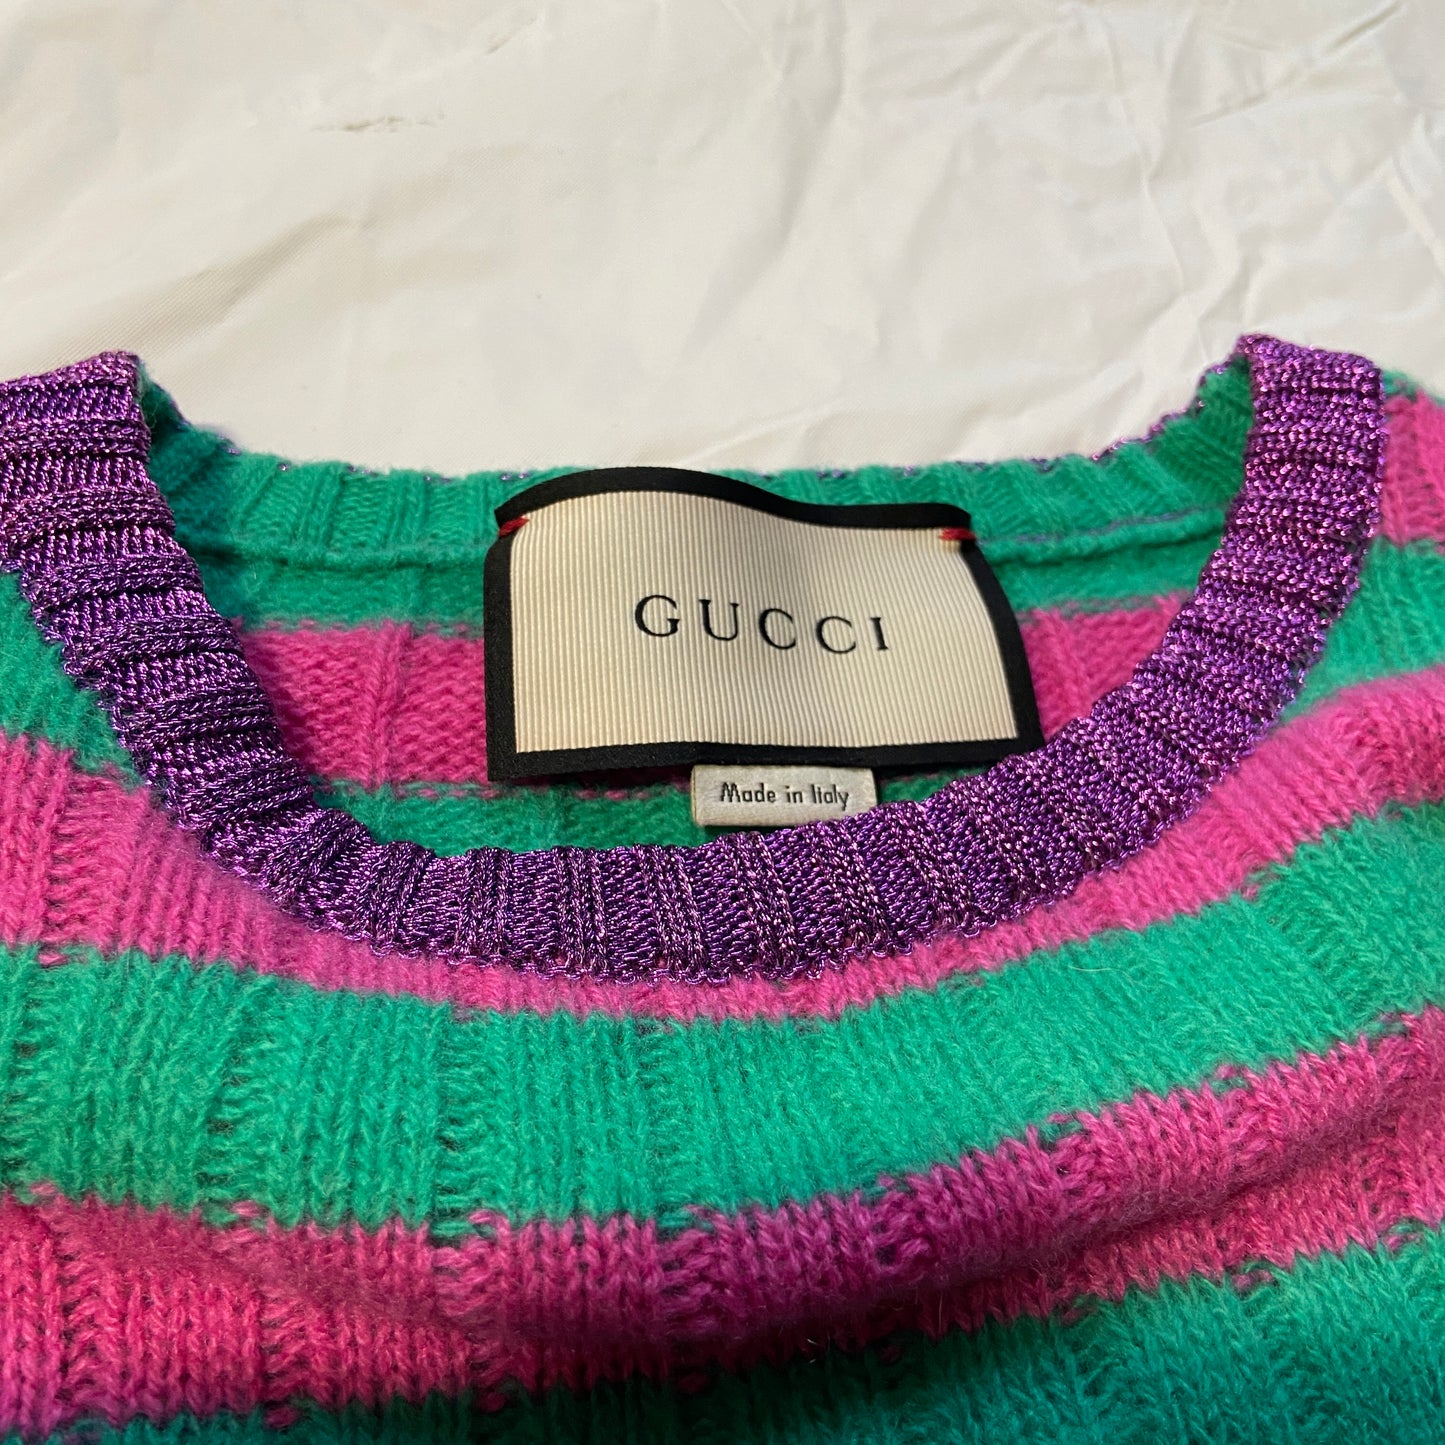 Gucci metalic wool knit crewneck sweater XL